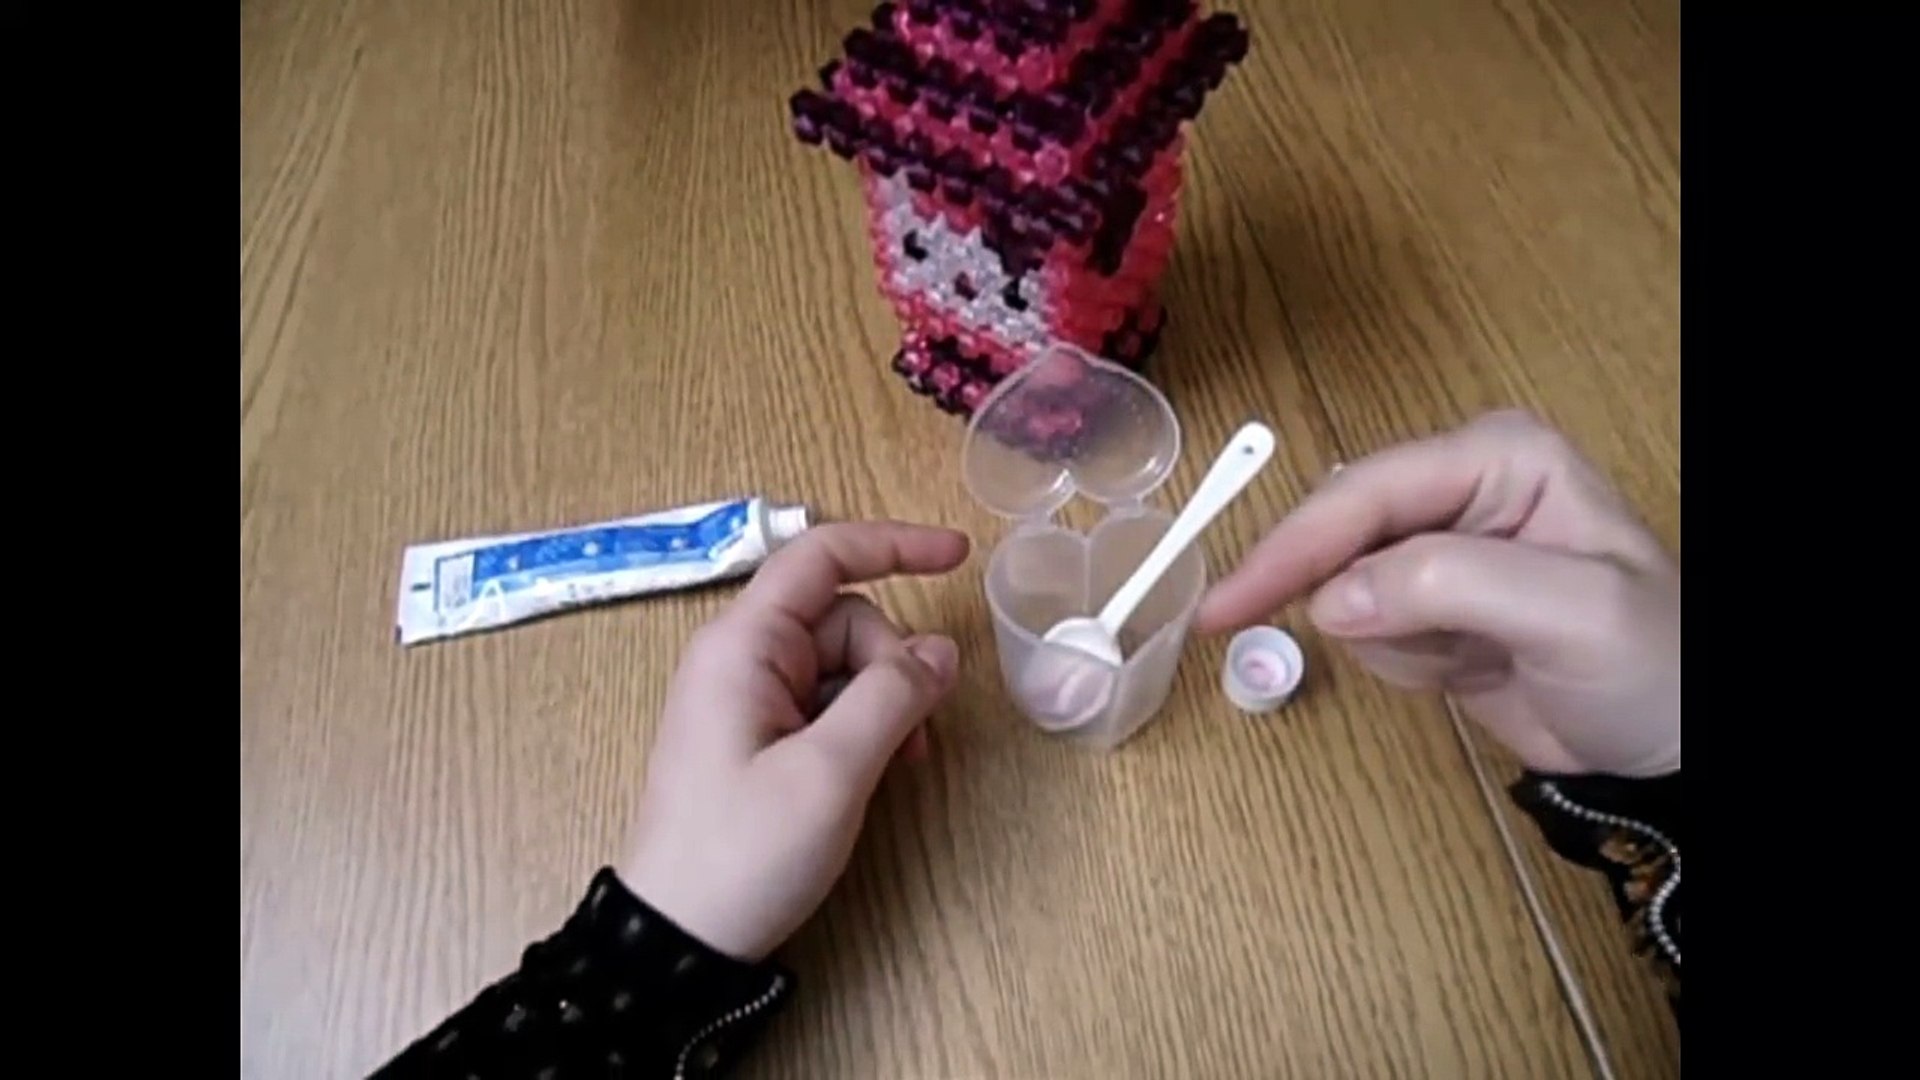 اختبار الحمل المنزلي باستخدام معجون الأسنان دون اللجوء لشراء تحليل الحمل مع  ايمان - video Dailymotion